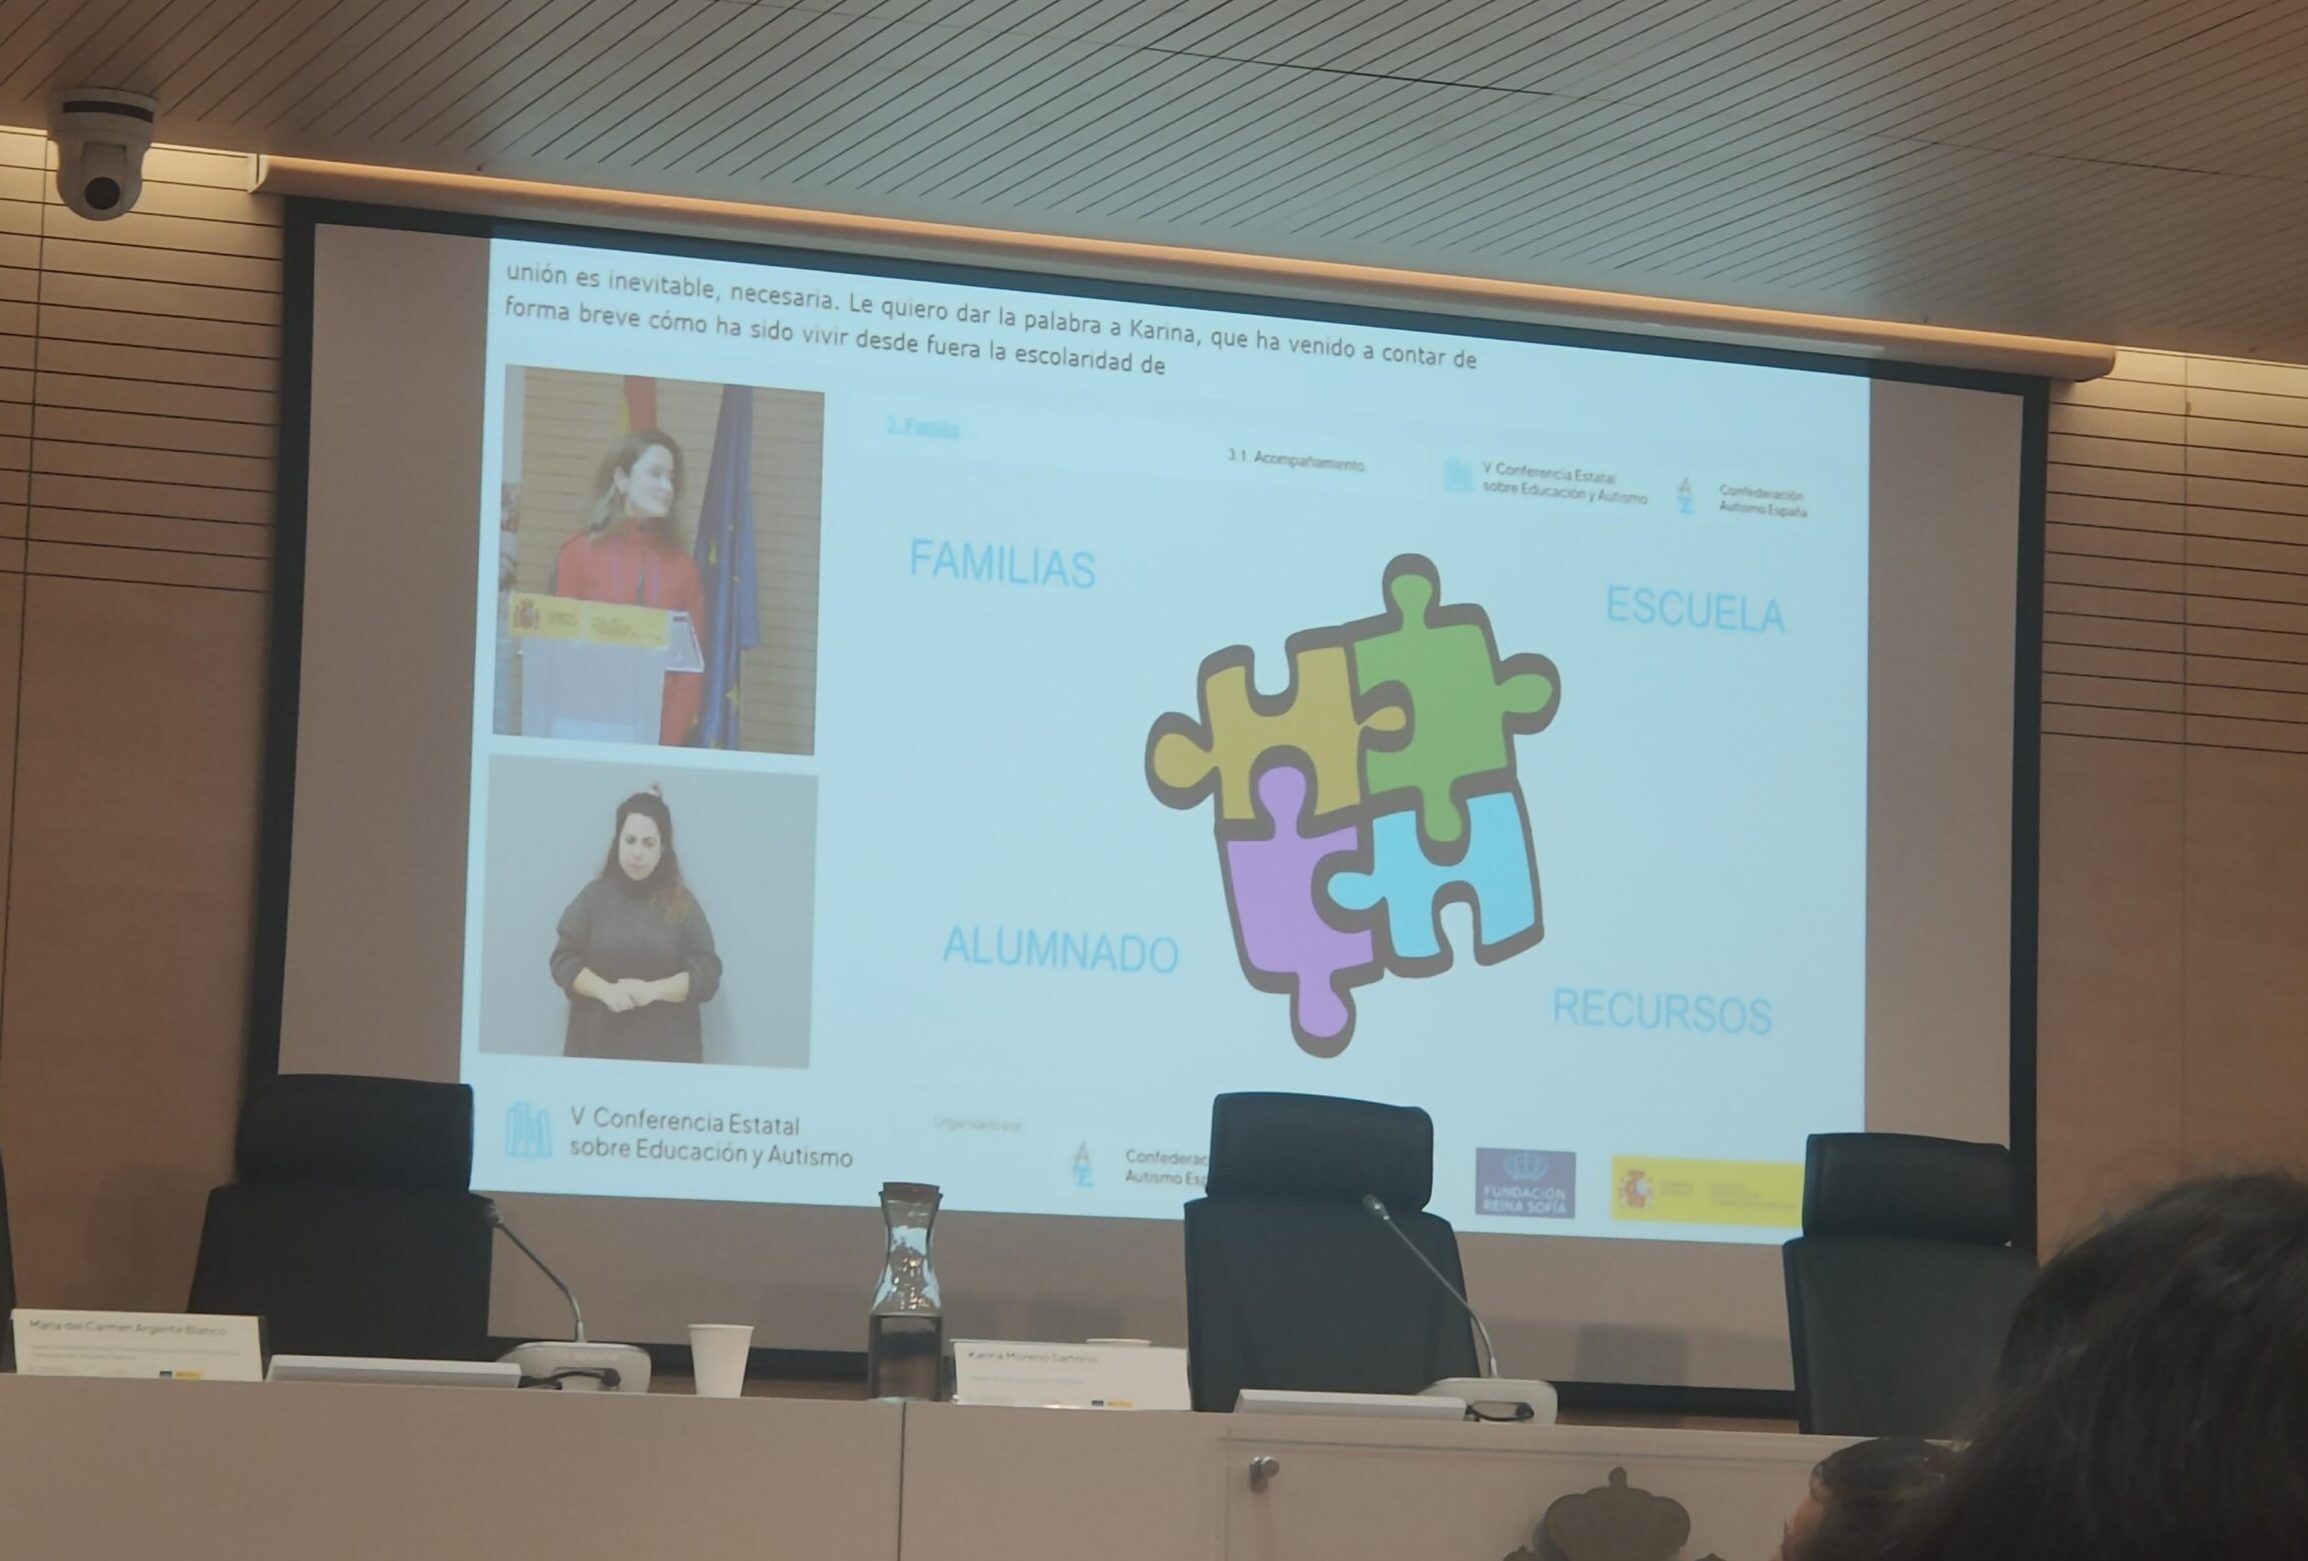 Foto de la ponencia donde se ve una diapositiva con piezas de puzle